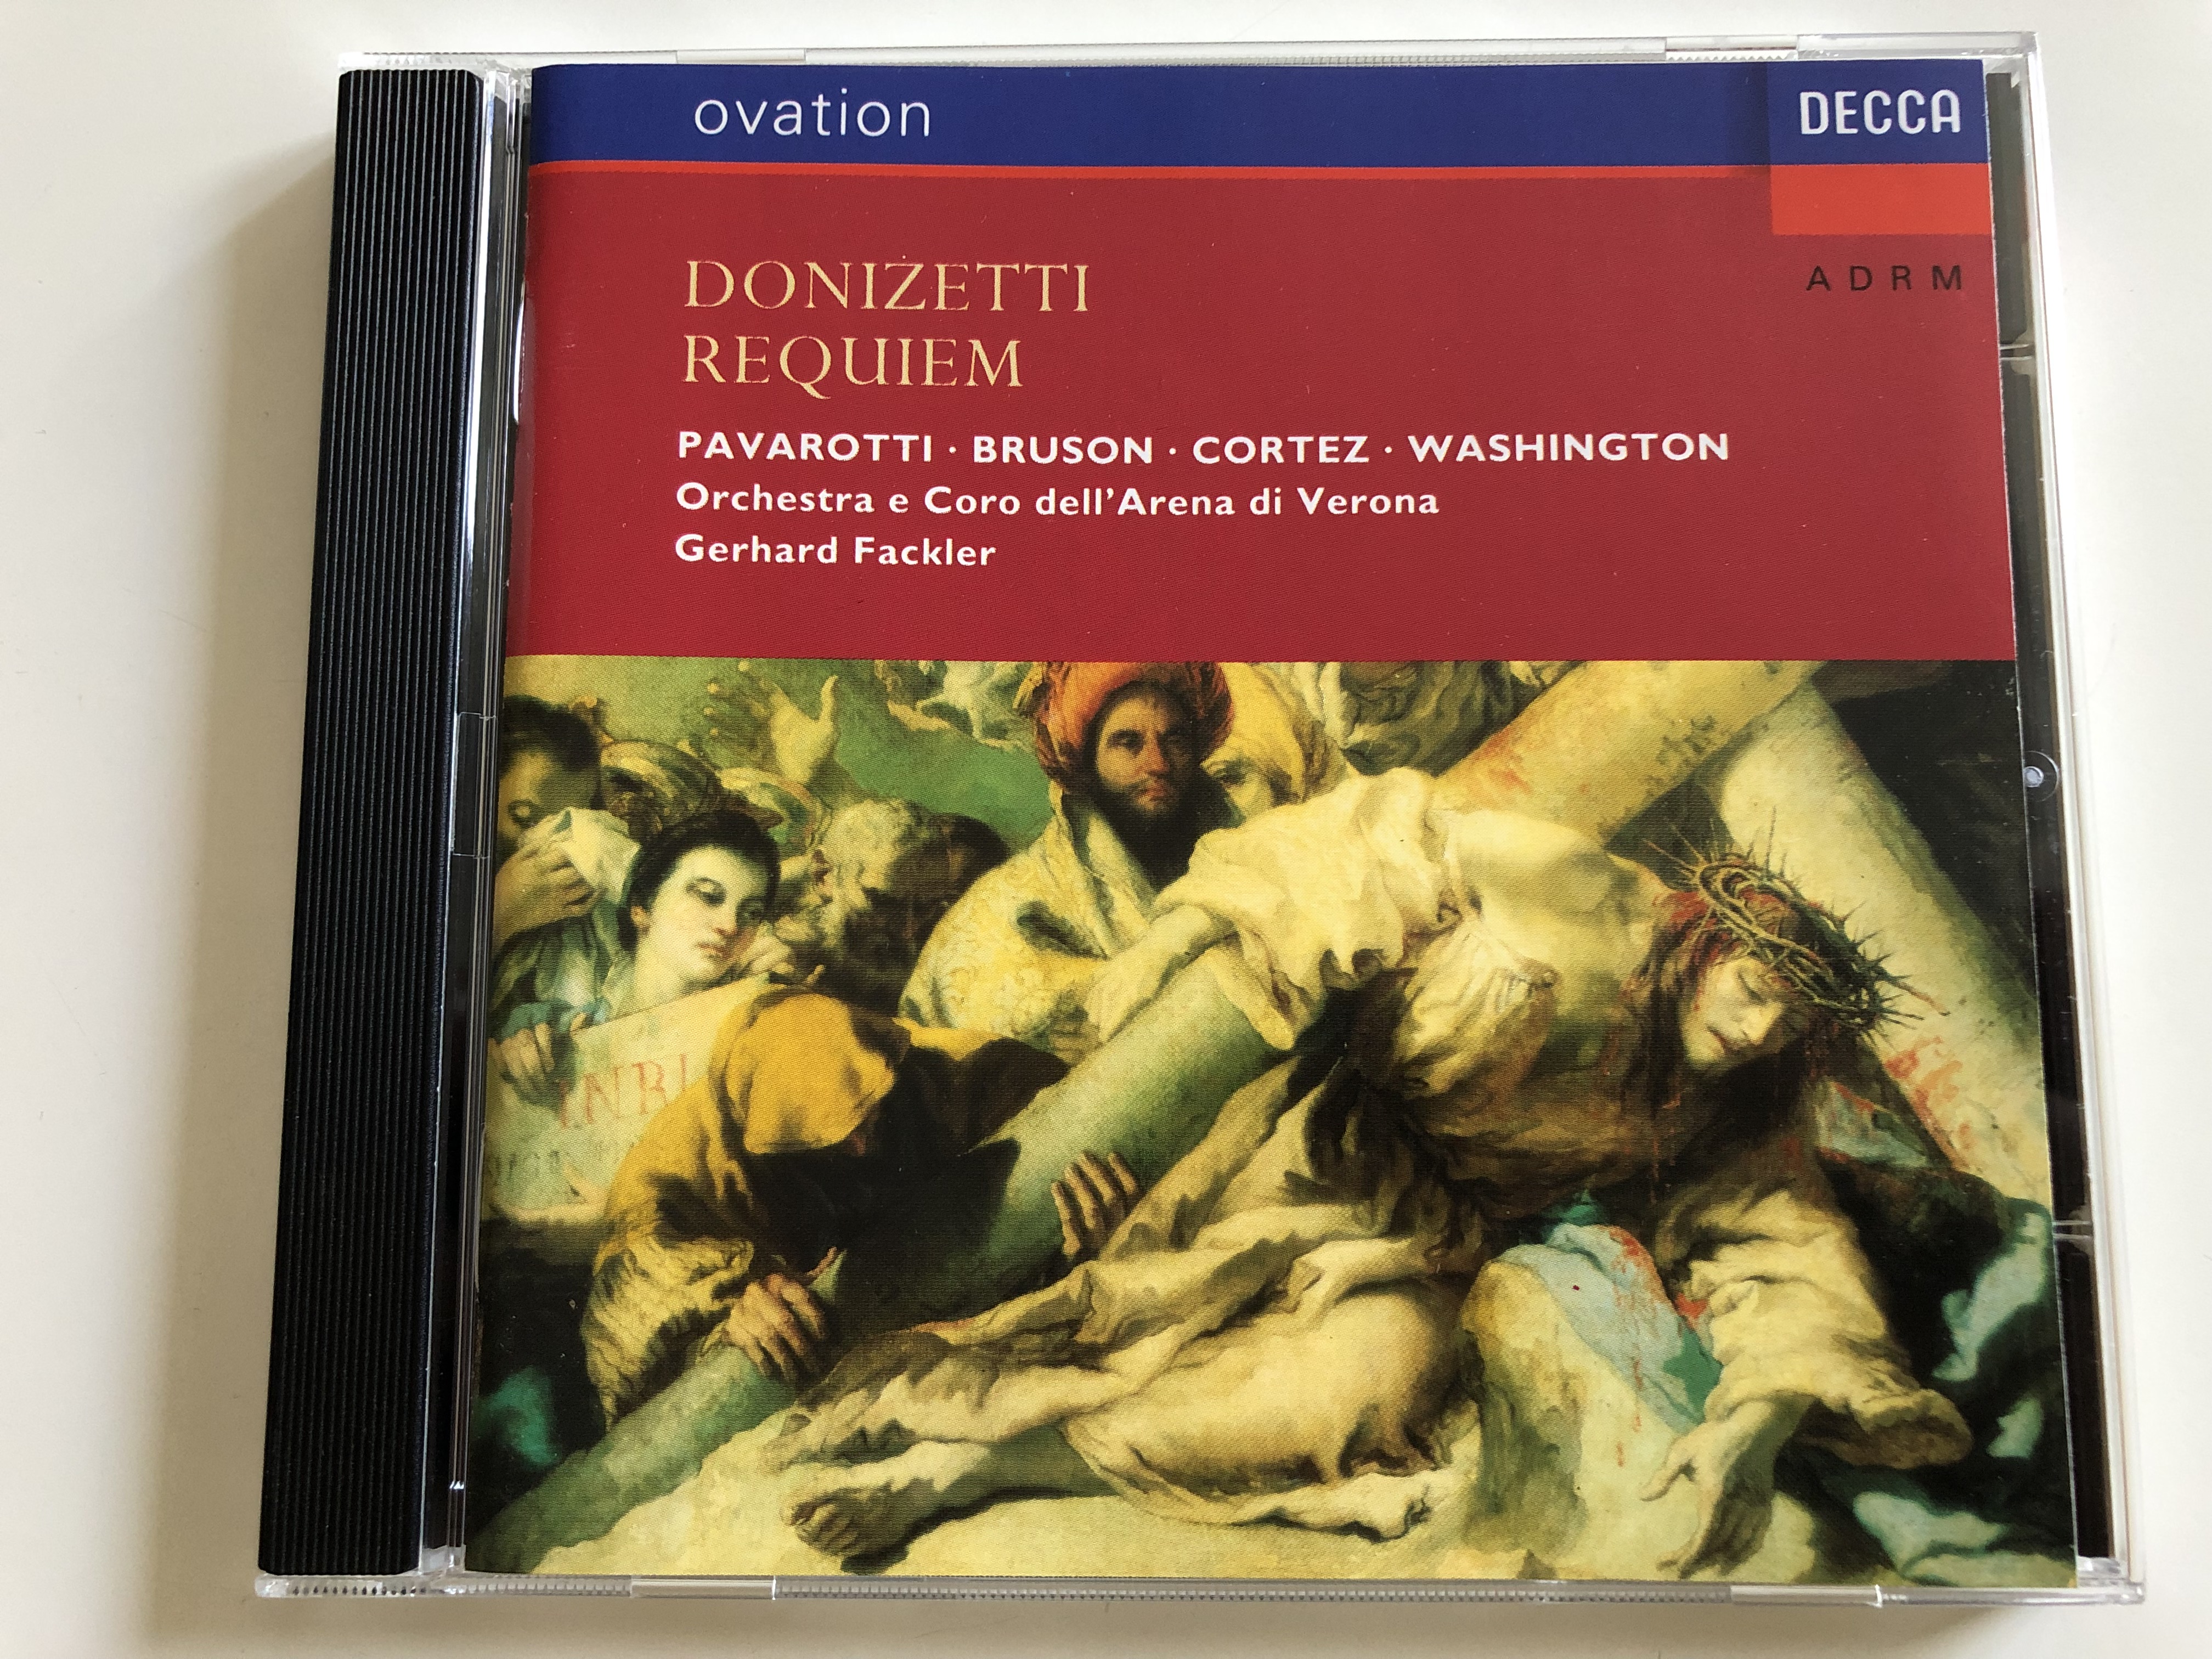 gaetano-donizetti-requiem-pavarotti-bruson-cortez-washington-orchestra-e-coro-dell-arena-di-verona-conducted-by-gerhard-fackler-decca-ovation-audio-cd-1992-425-043-2-1-.jpg